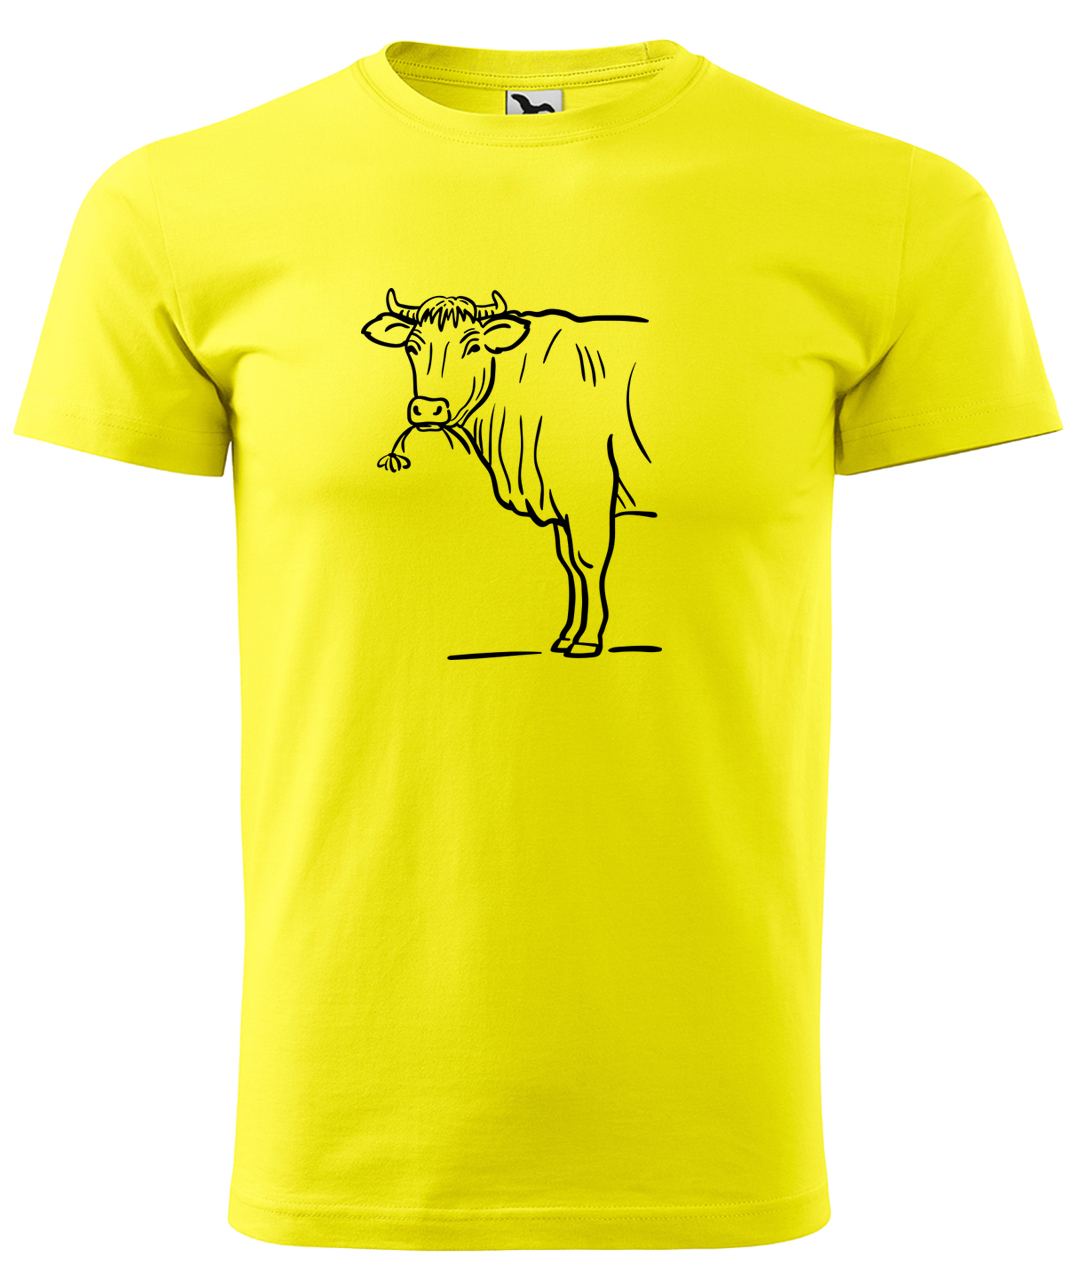 Dětské tričko s krávou - Býk Velikost: 4 roky / 110 cm, Barva: Žlutá (04), Délka rukávu: Krátký rukáv